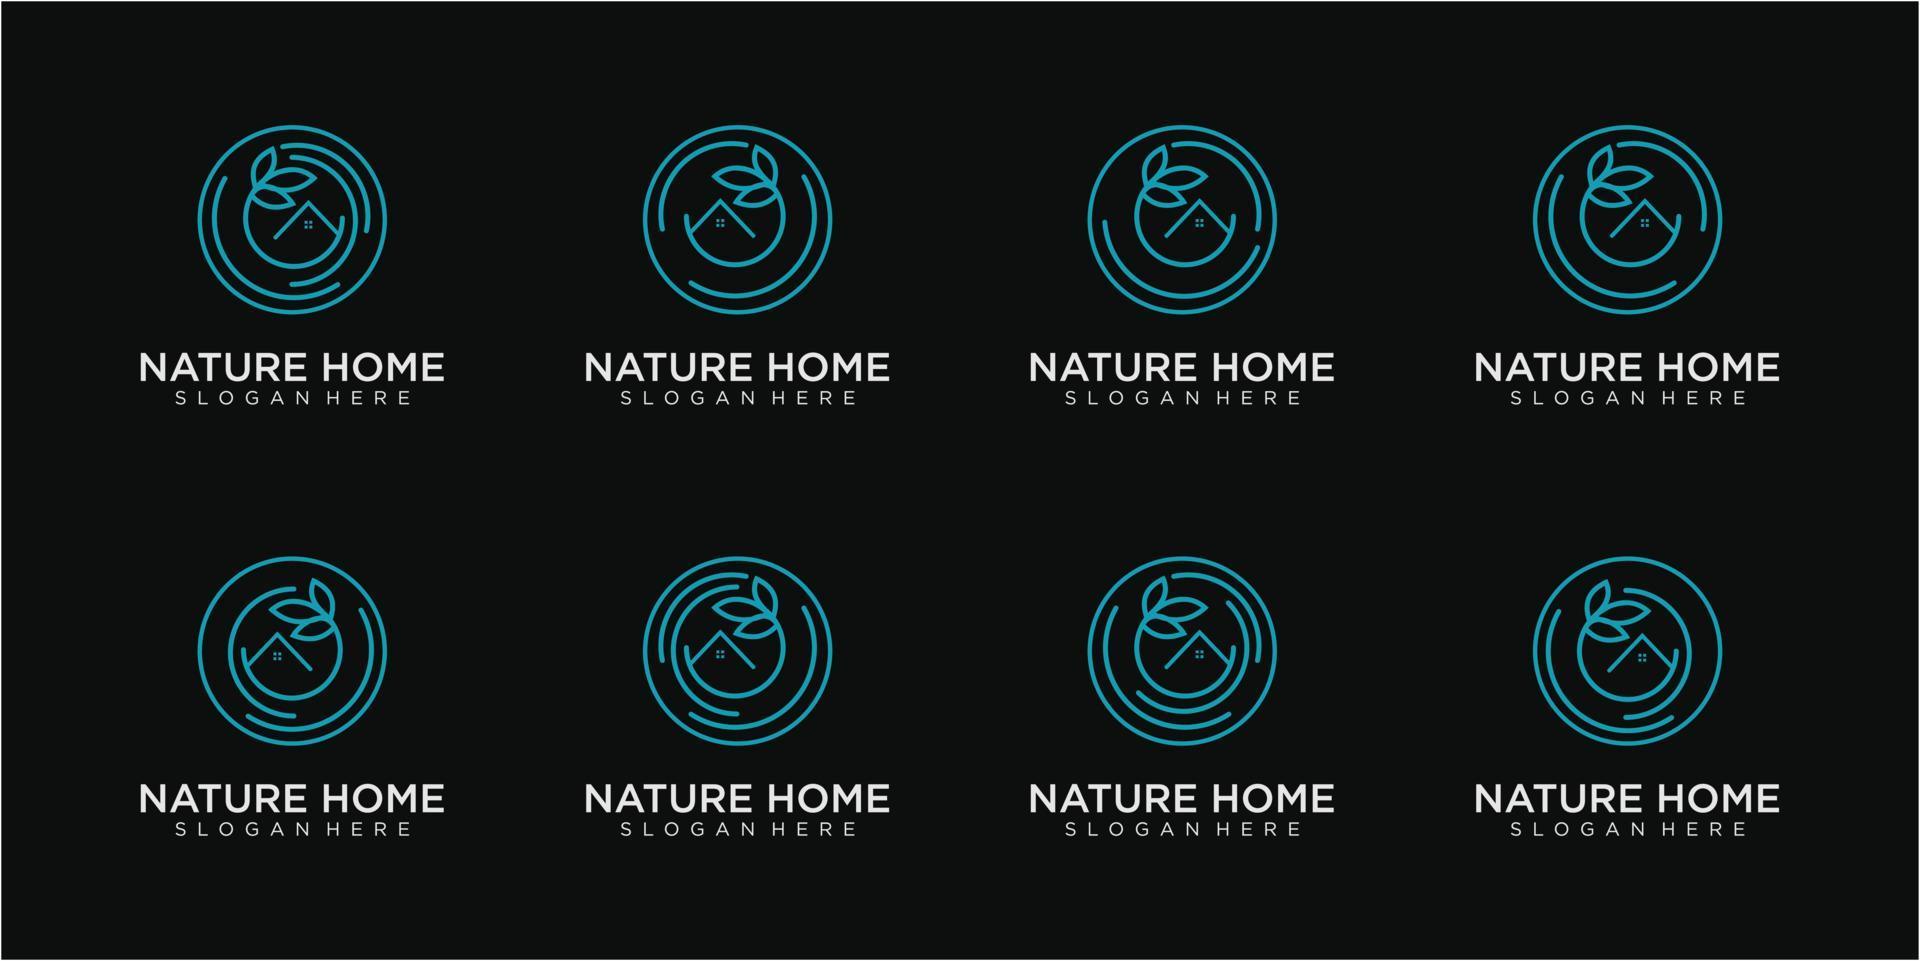 conjunto de plantilla de diseño de logotipo de la casa de la naturaleza vector